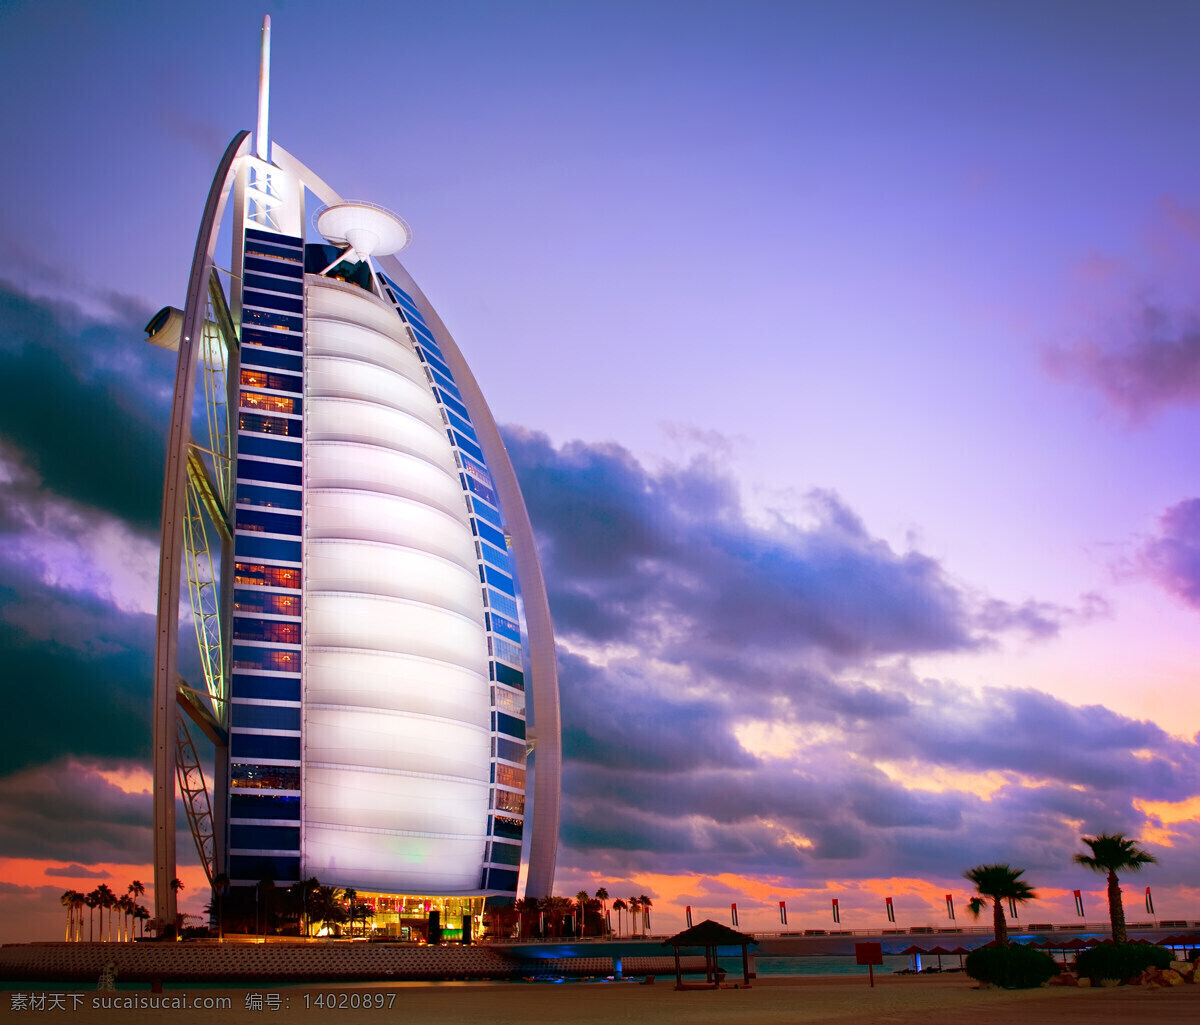 迪拜帆船酒店 迪拜 风帆酒店 帆船酒店 阿拉伯塔酒店 高级 七星级 建筑 建筑摄影 建筑园林